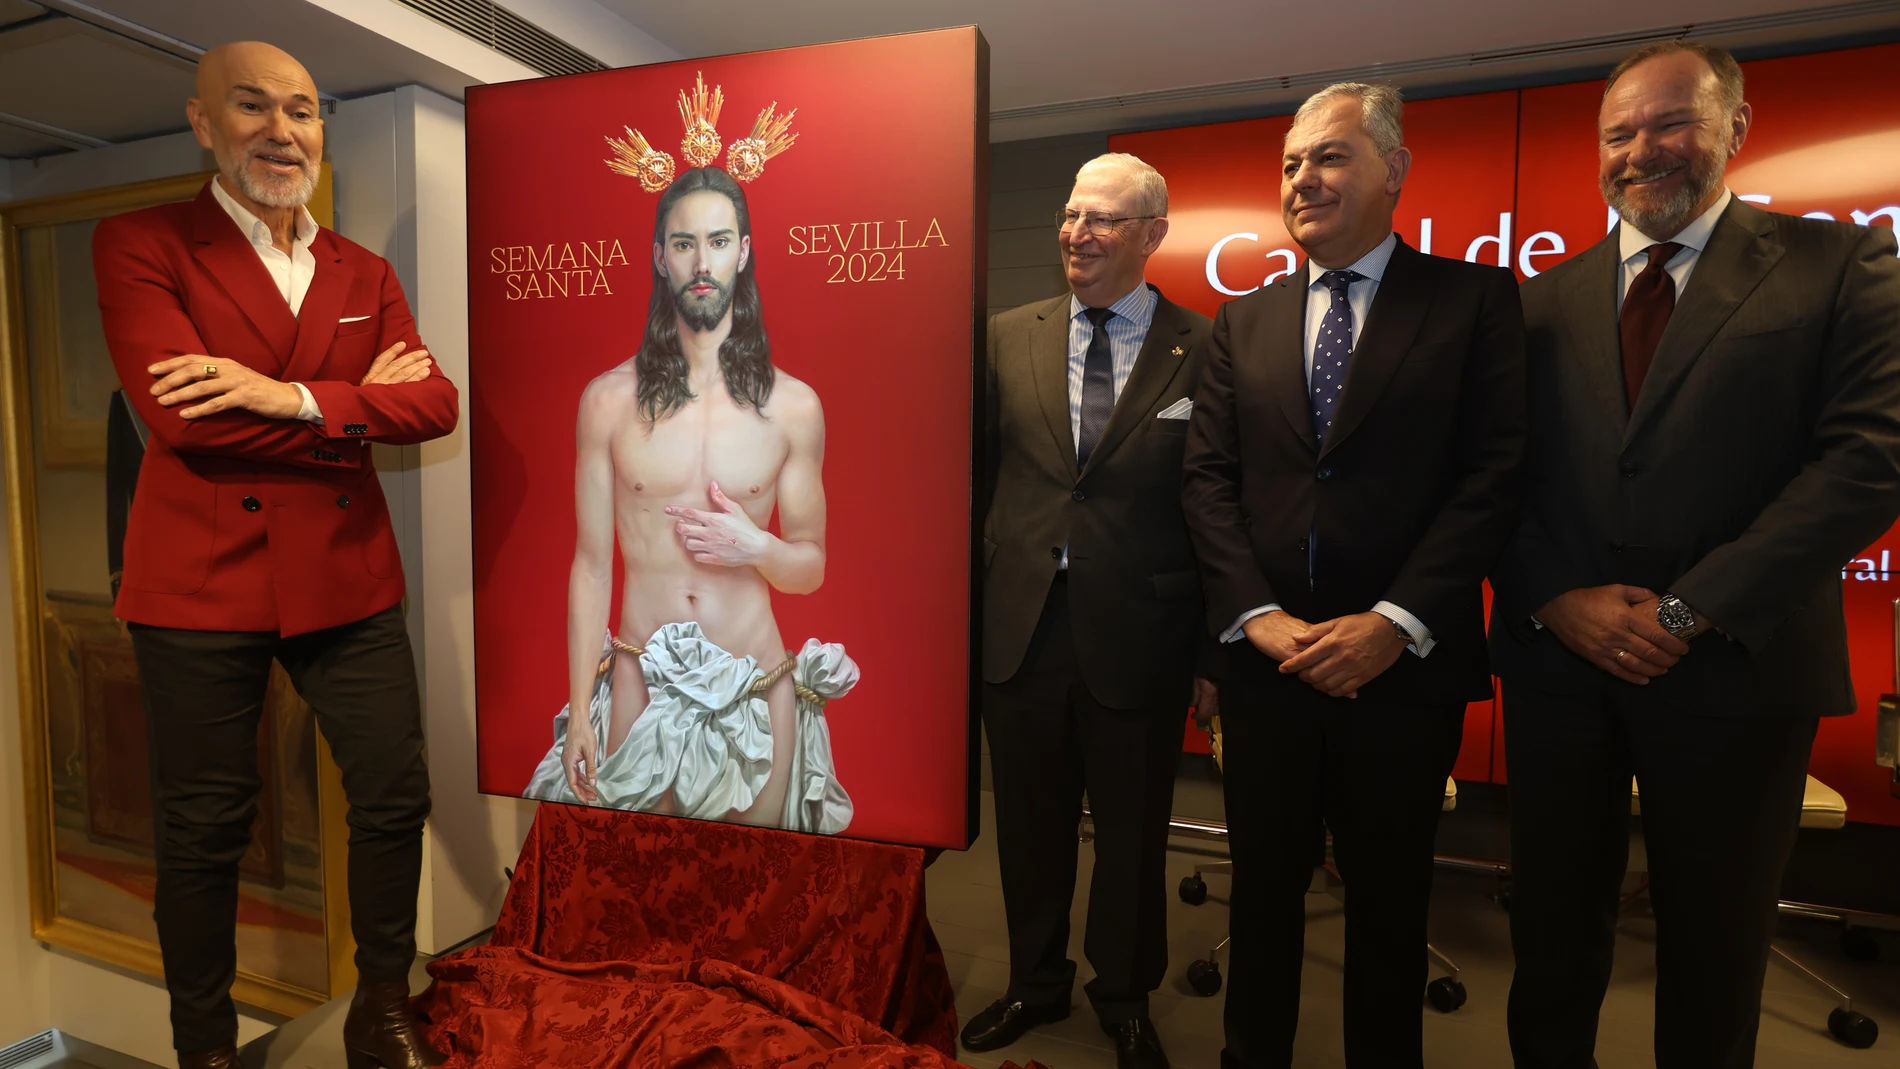 El autor, Salustiano, posa junto al cartel anunciador de la Semana Santa de Sevilla 2024 y a las autoridades presentes en el actoAYUNTAMIENTO DE SEVILLA27/01/2024